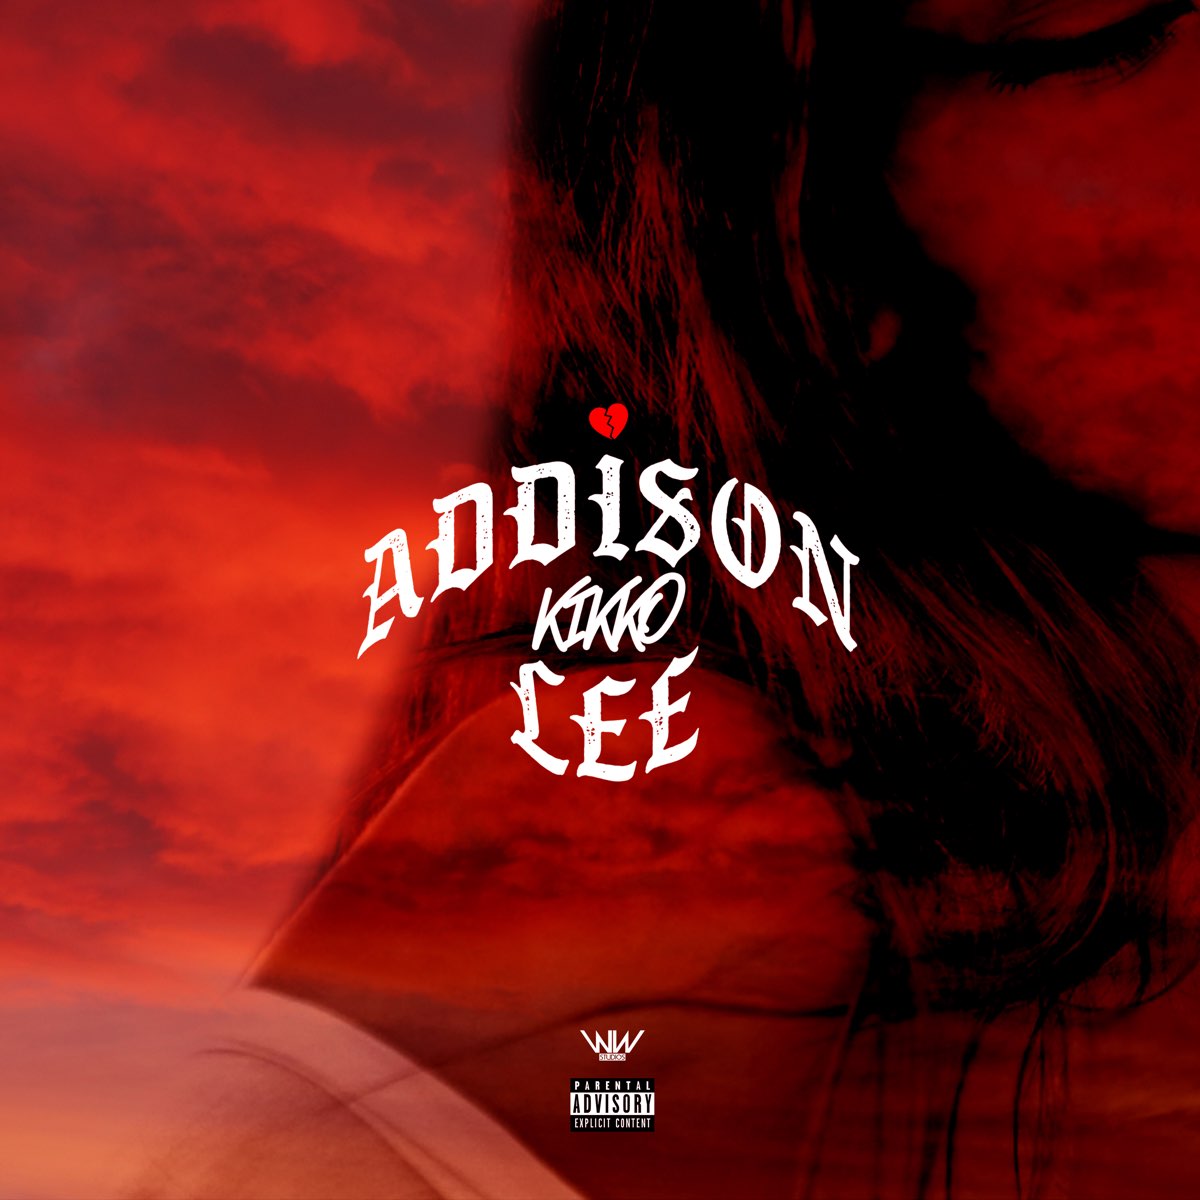 Addison Lee - Single by Kikko on Apple Music